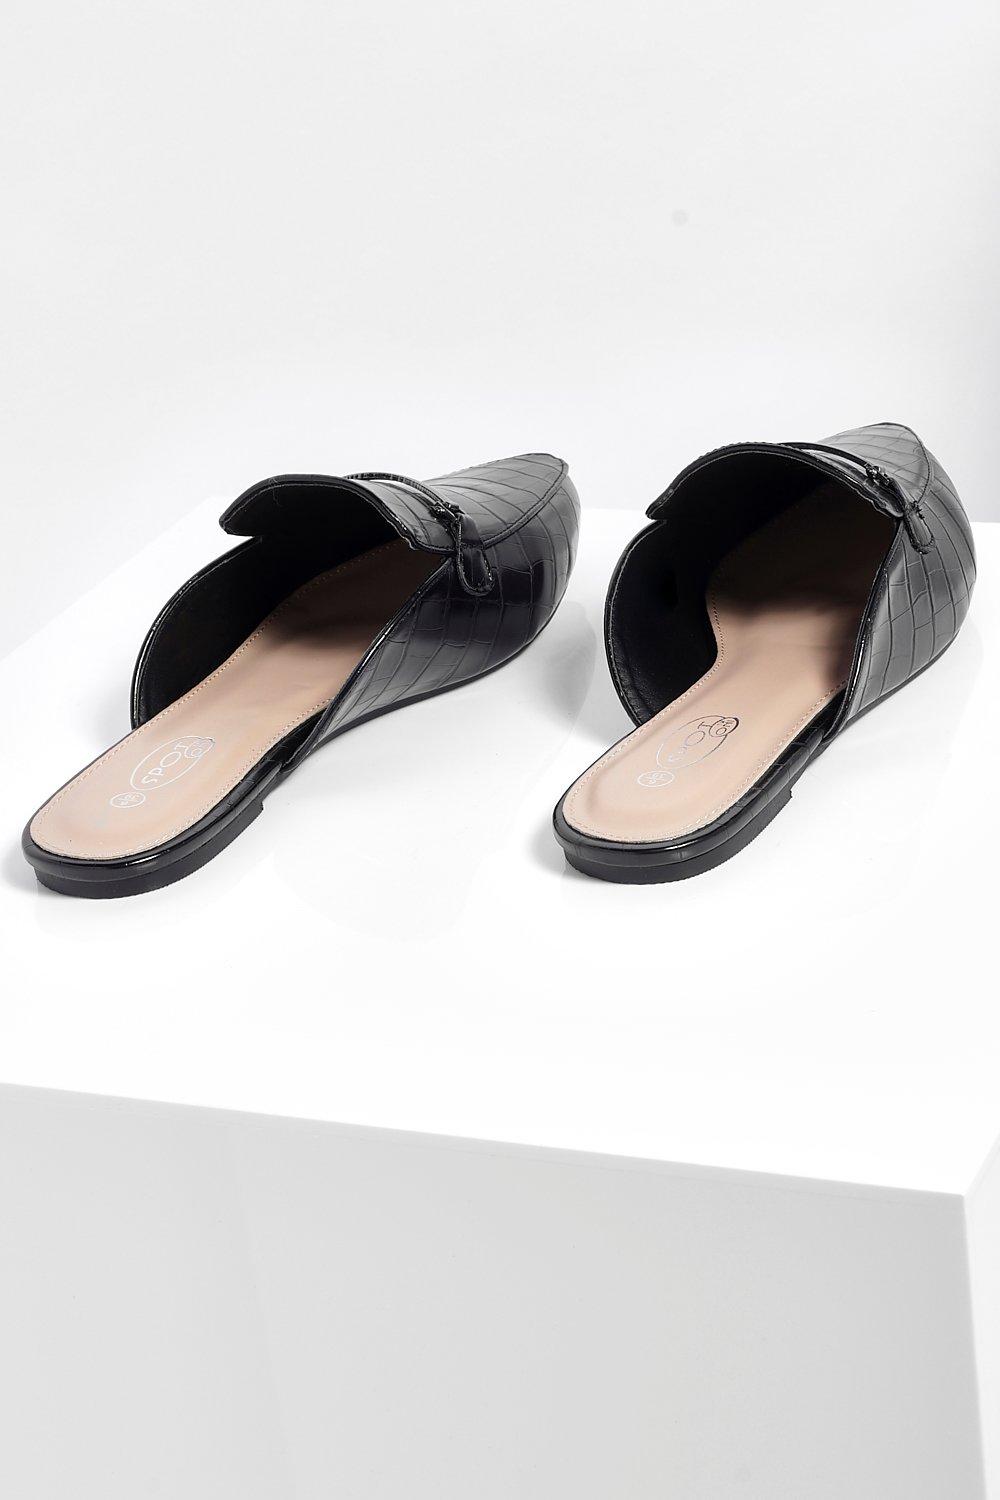 Zapatos de tacón fino mujer negros estampado cocodrilo B009